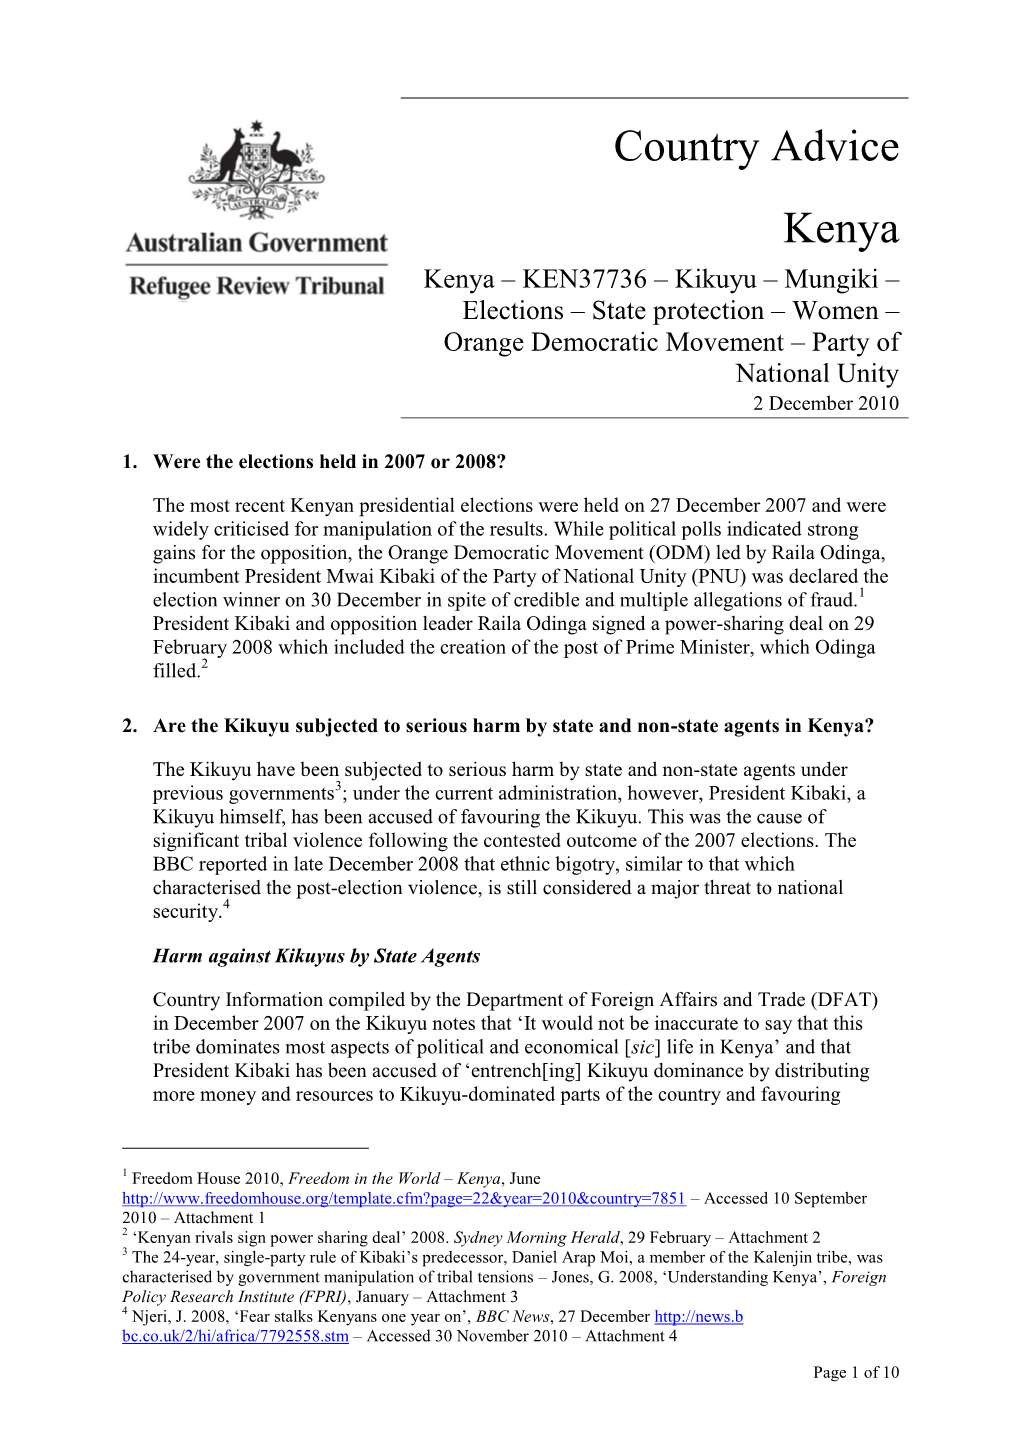 Kenya – KEN37736 – Kikuyu – Mungiki – Elections